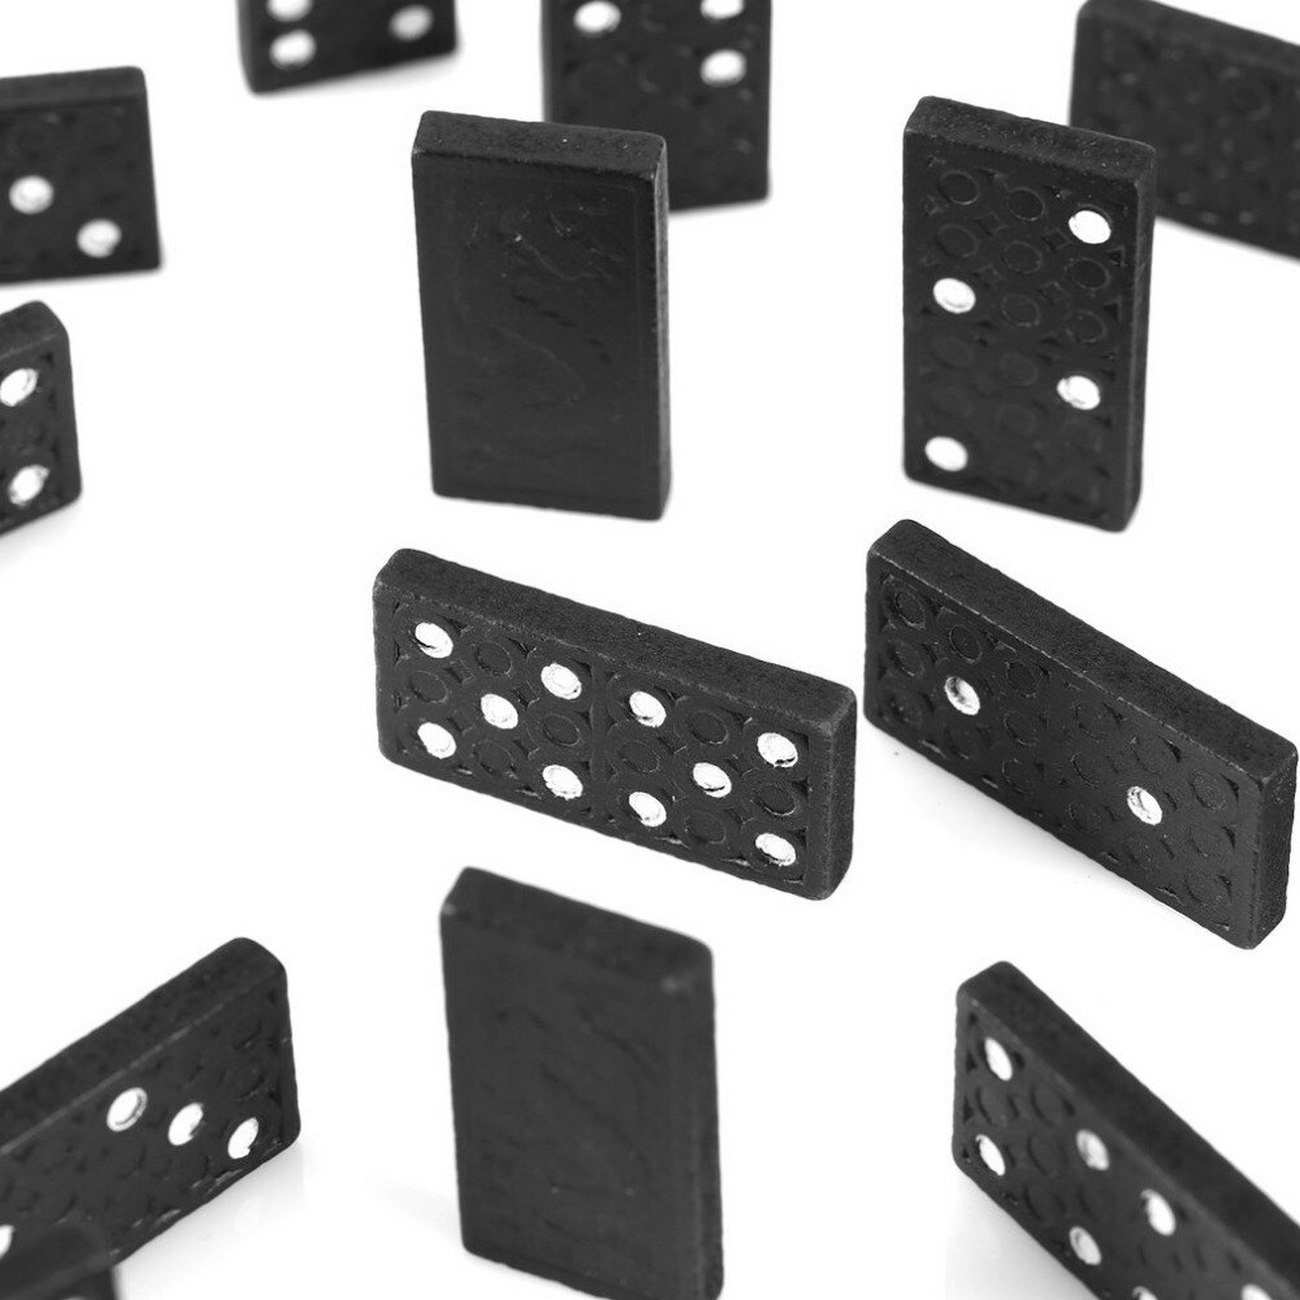 Domino Mini En Madera Juego De Mesa Entretenimiento